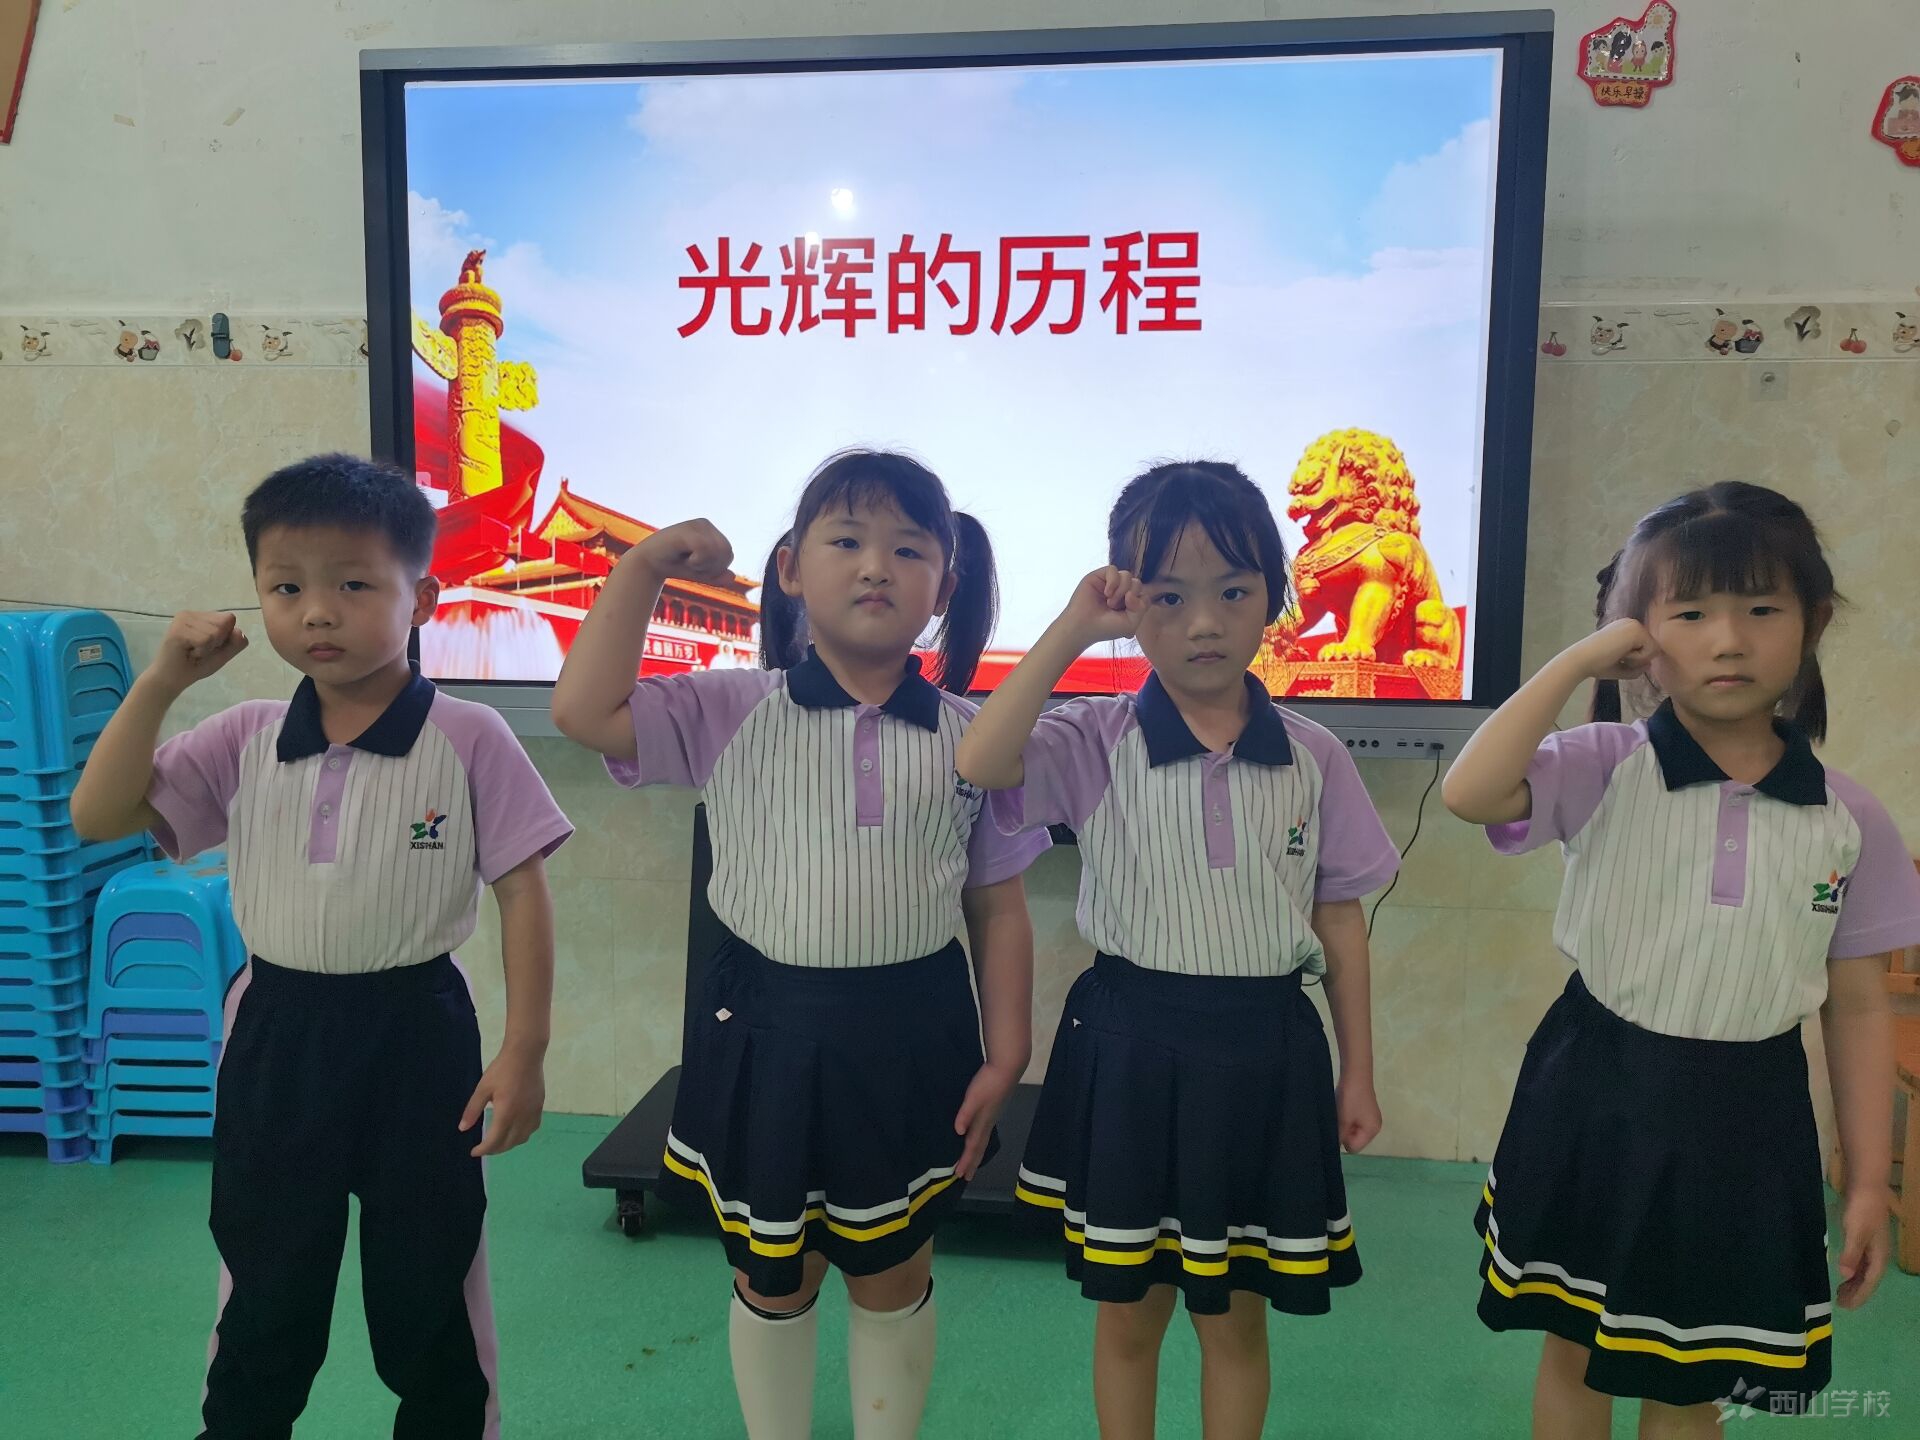 童心向党 放飞梦想——福清西山学校幼儿园庆祝建党节活动新闻